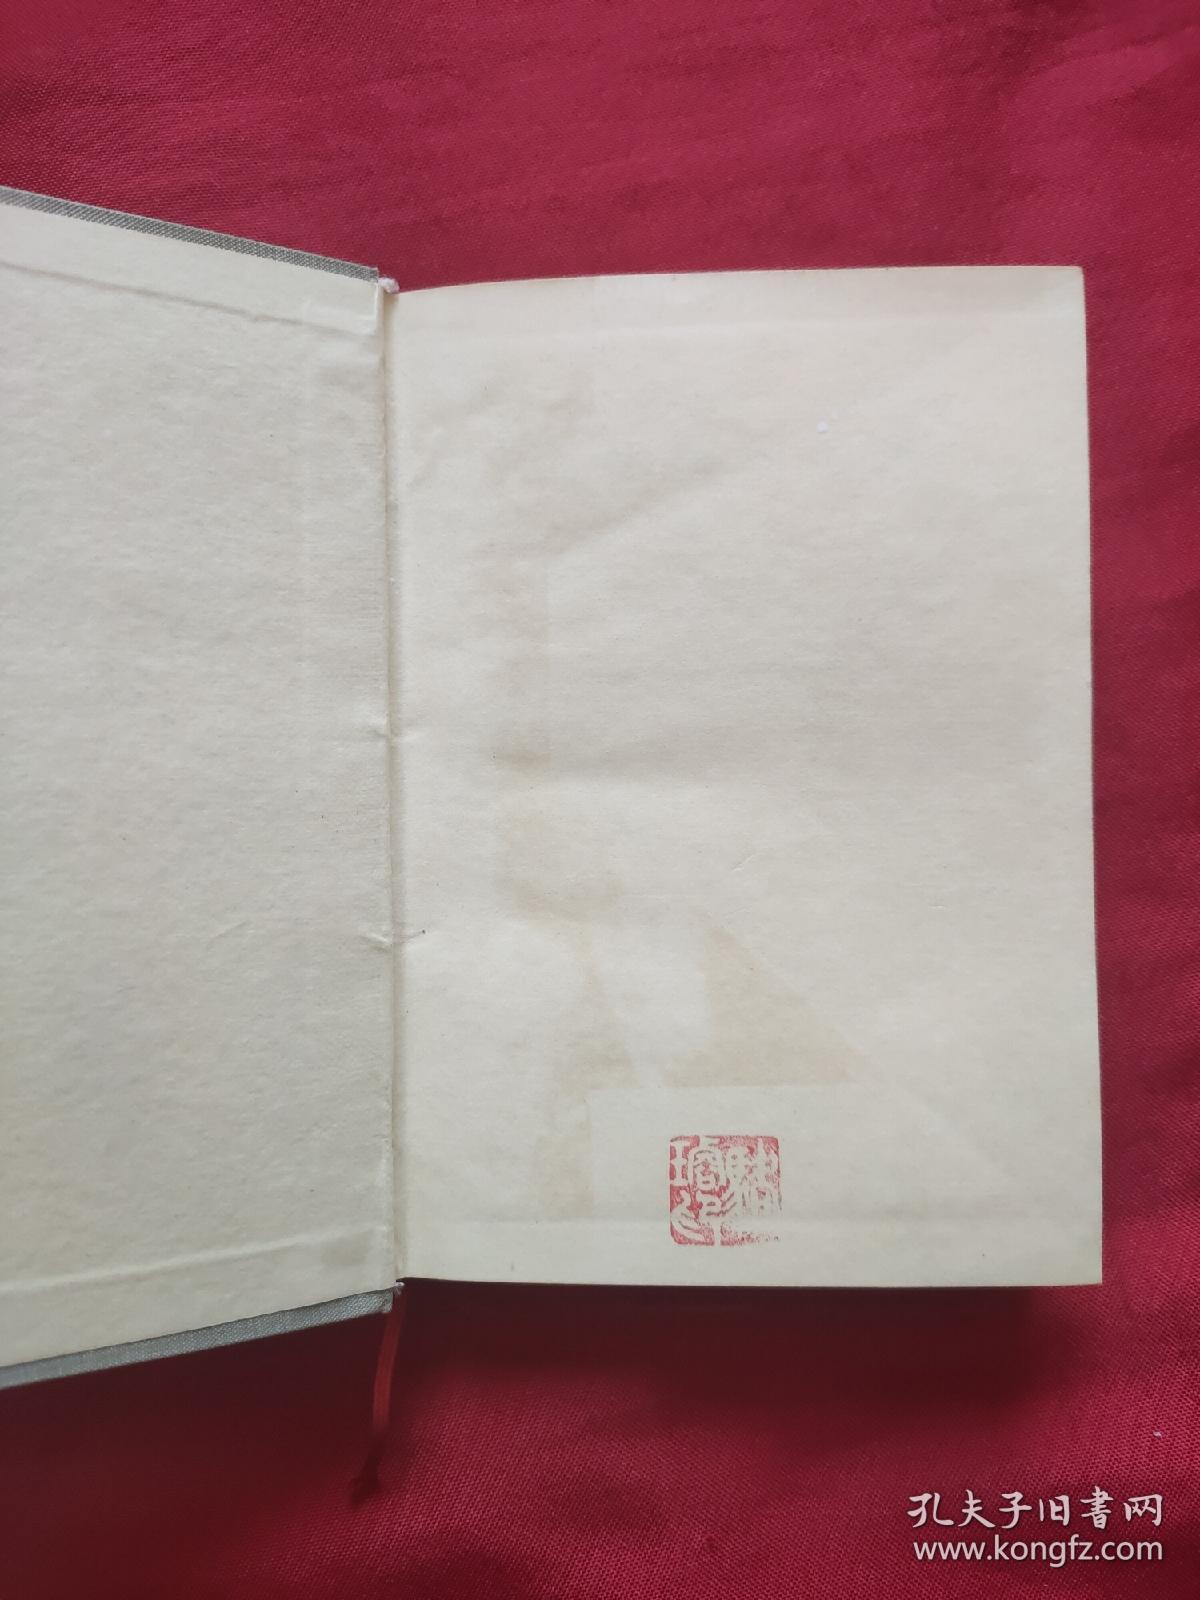 人体解剖图谱 （精装）全图解 1979年一版一印版本稀少（品如图）